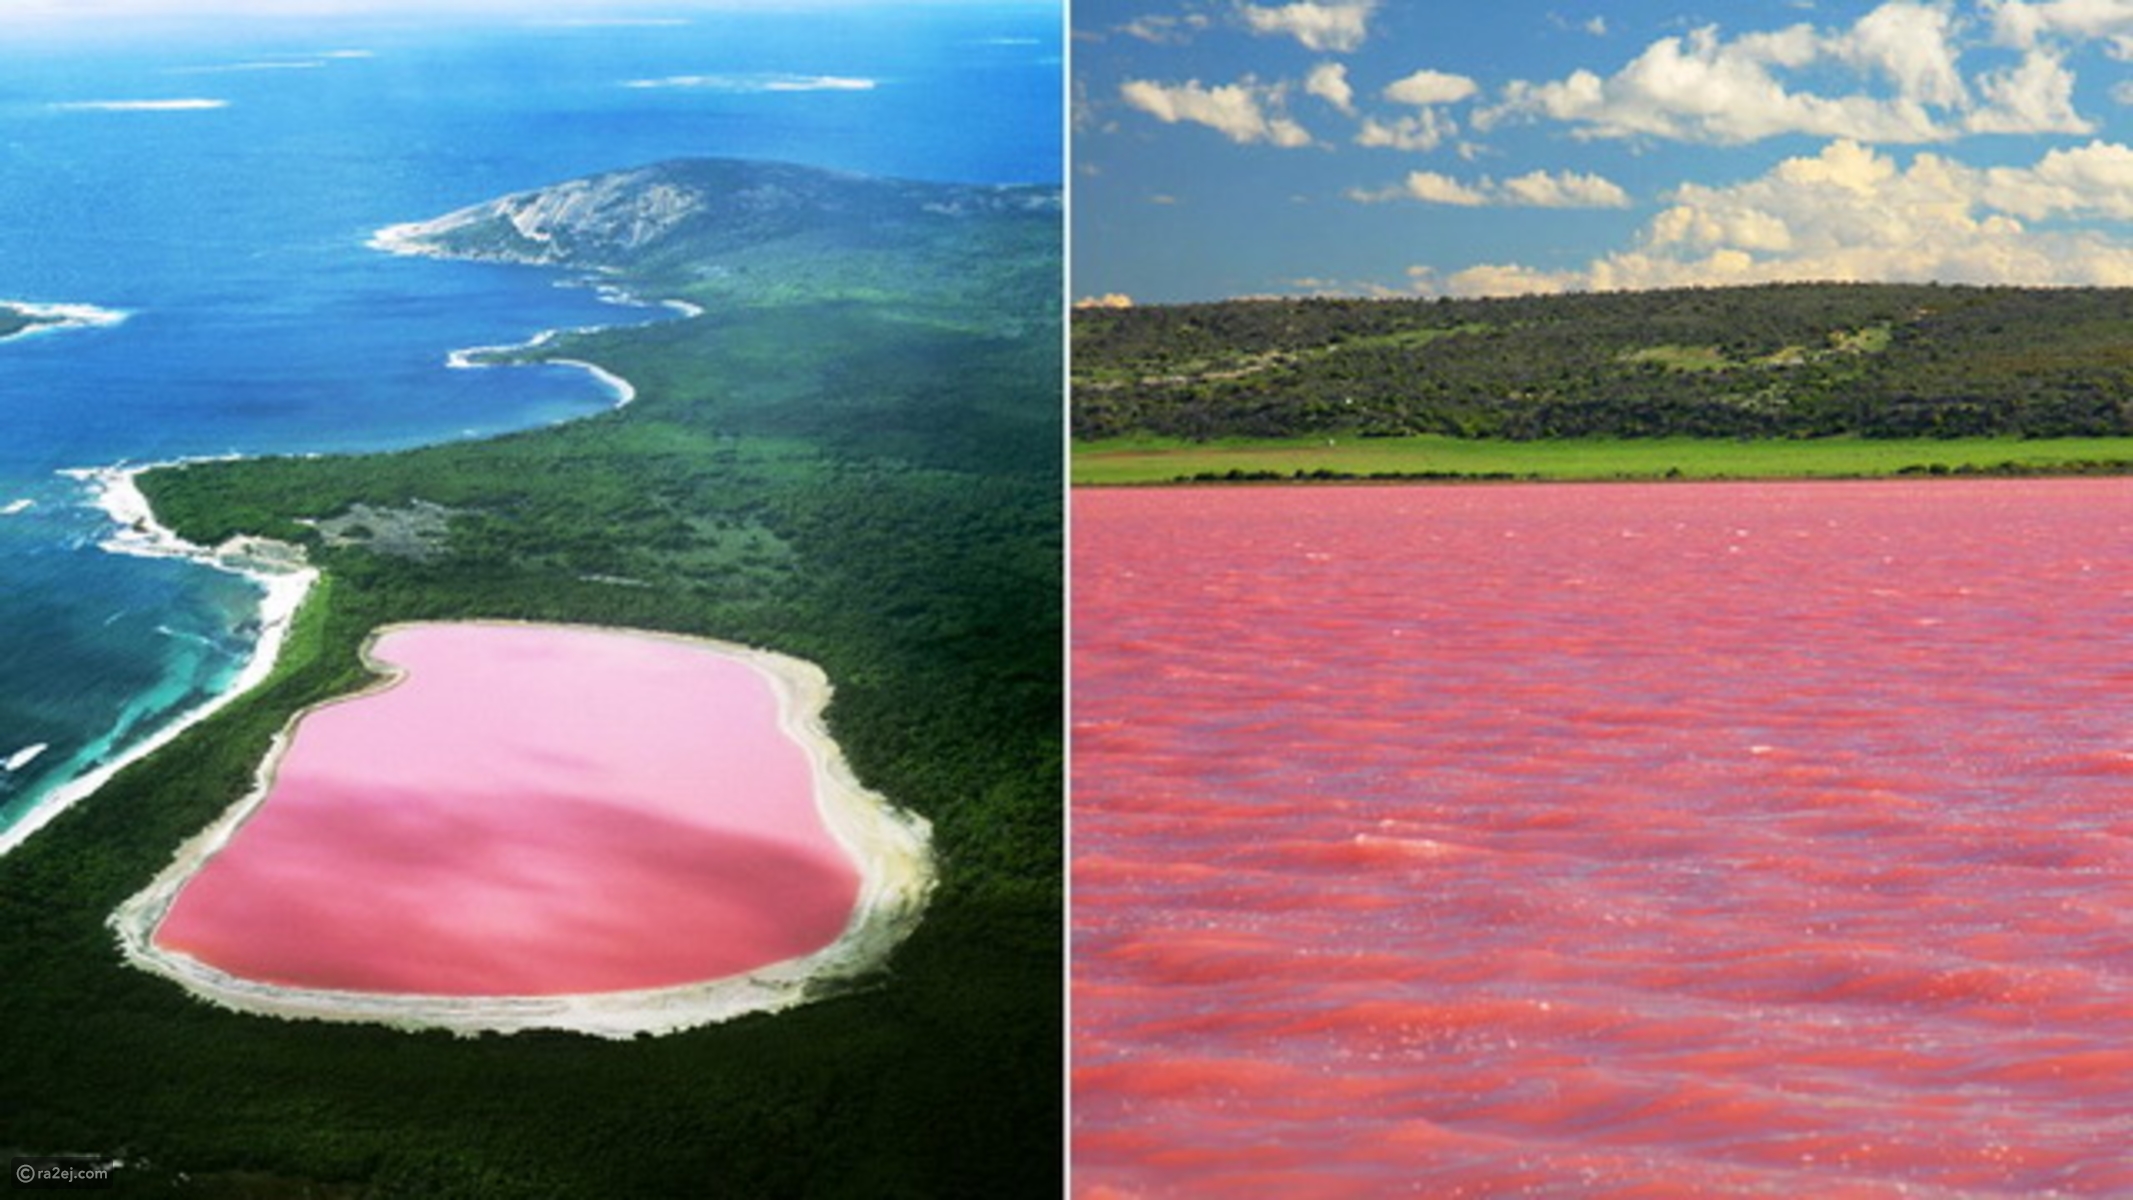 بحيرة هيلير أو البحيرة الوردية في غرب أستراليا 40467a02c37e13e49a0d85ca6aa69d3061444805-041016125312.jpg?preset=v3